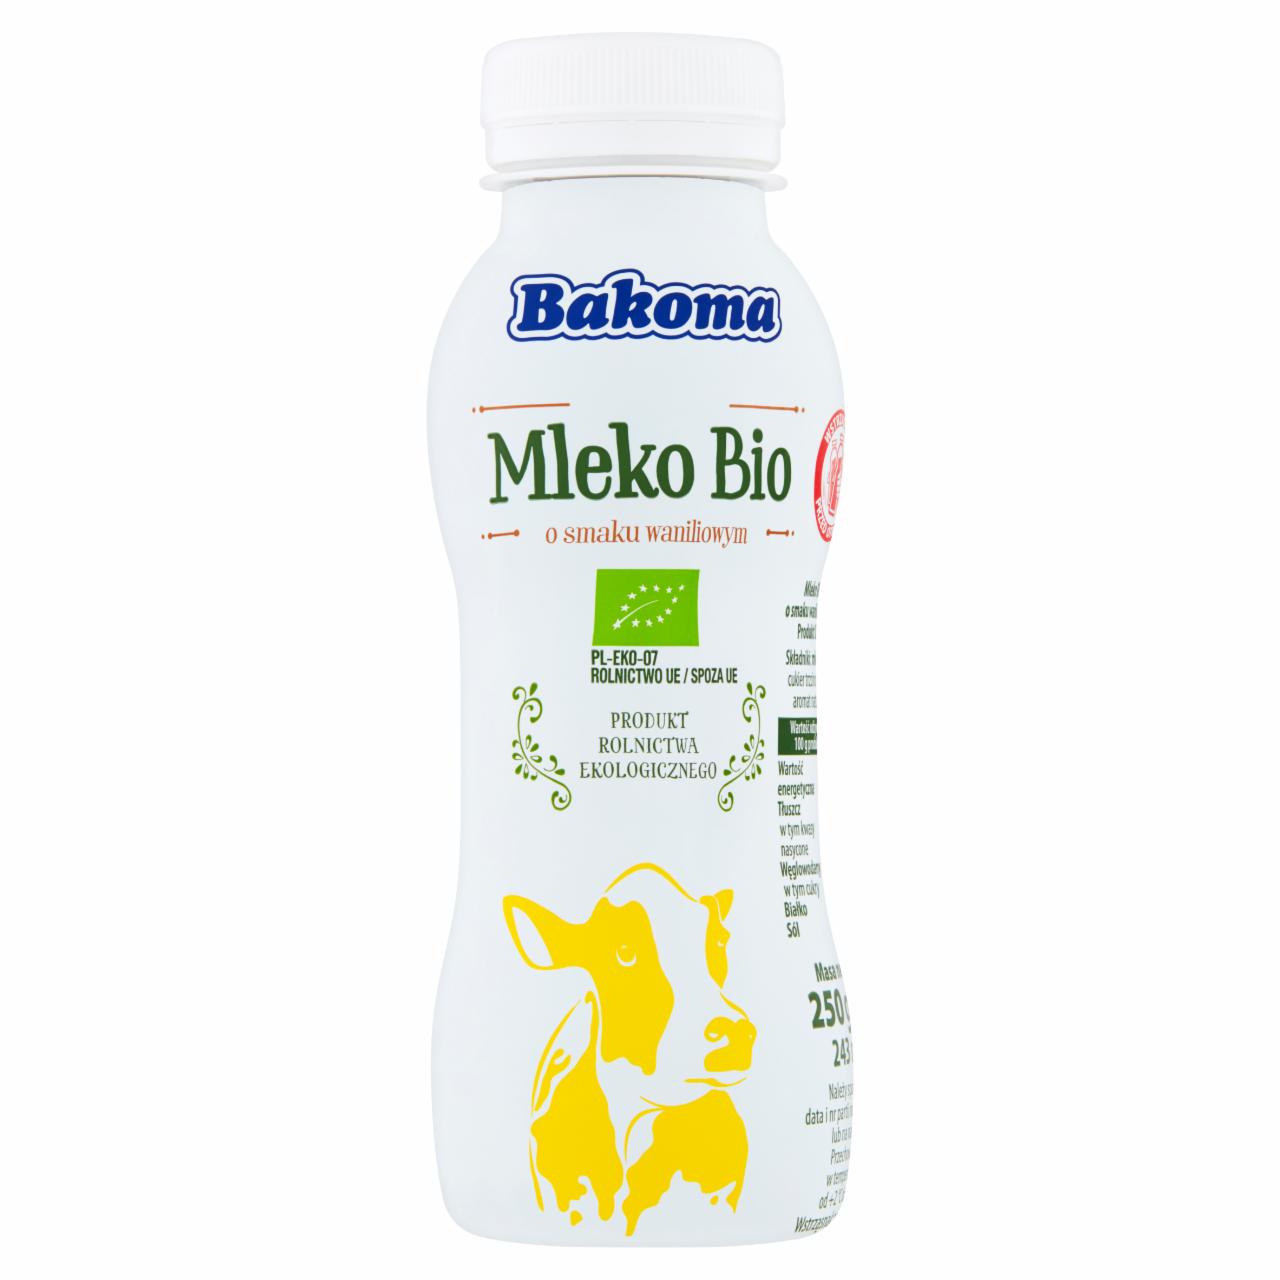 Zdjęcia - Bakoma Mleko Bio o smaku waniliowym 250 g